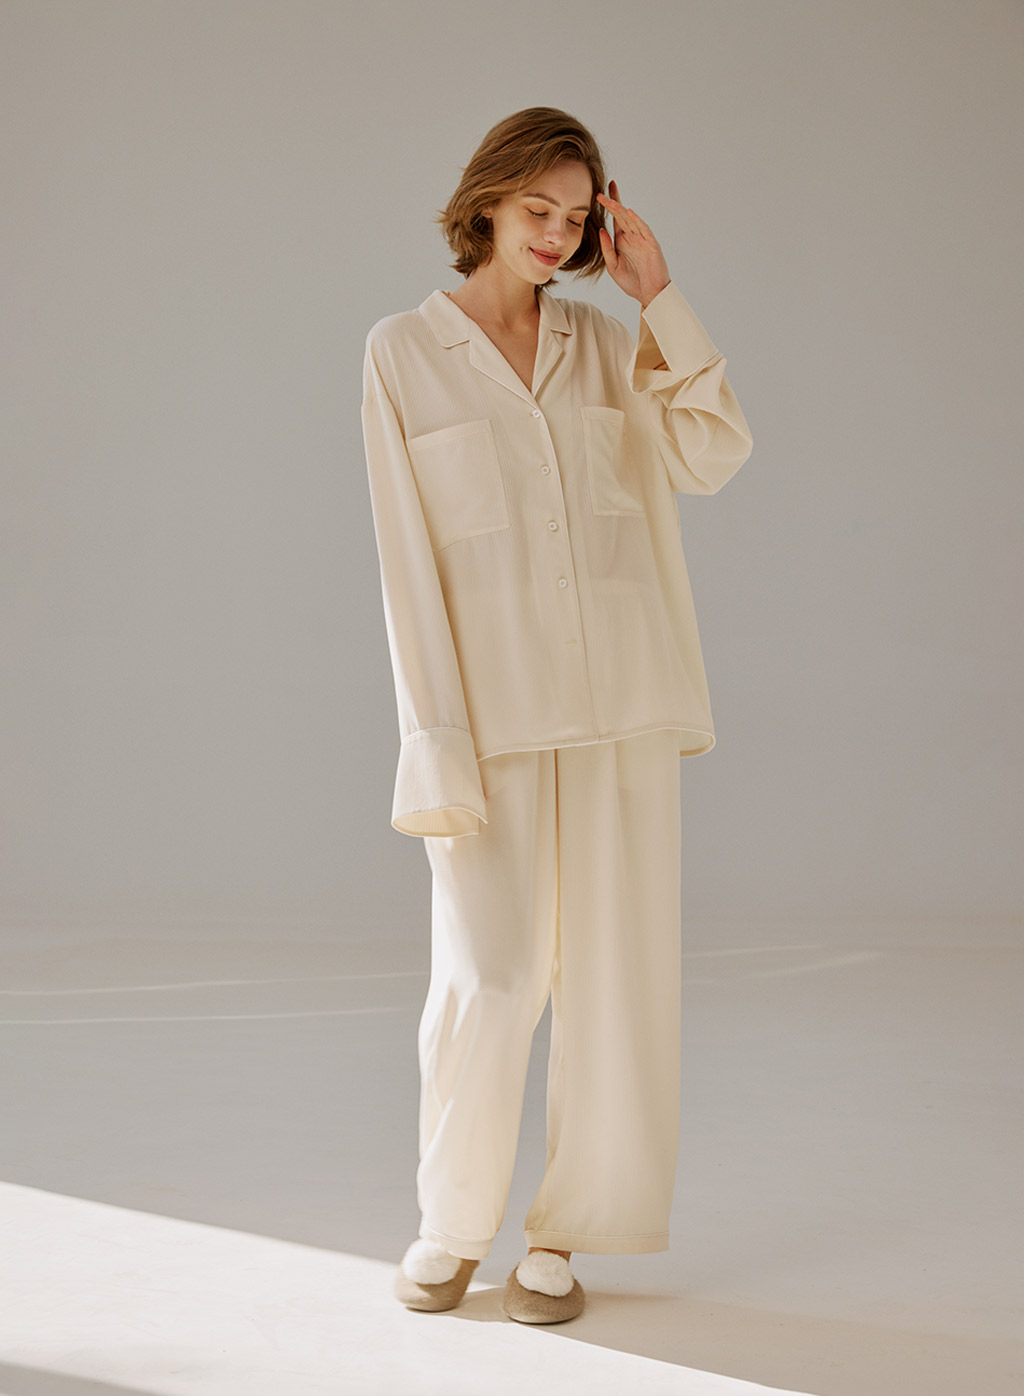 Women's Sleepwear, Pajamas, Robes & Nightgowns | Nap Loungewear